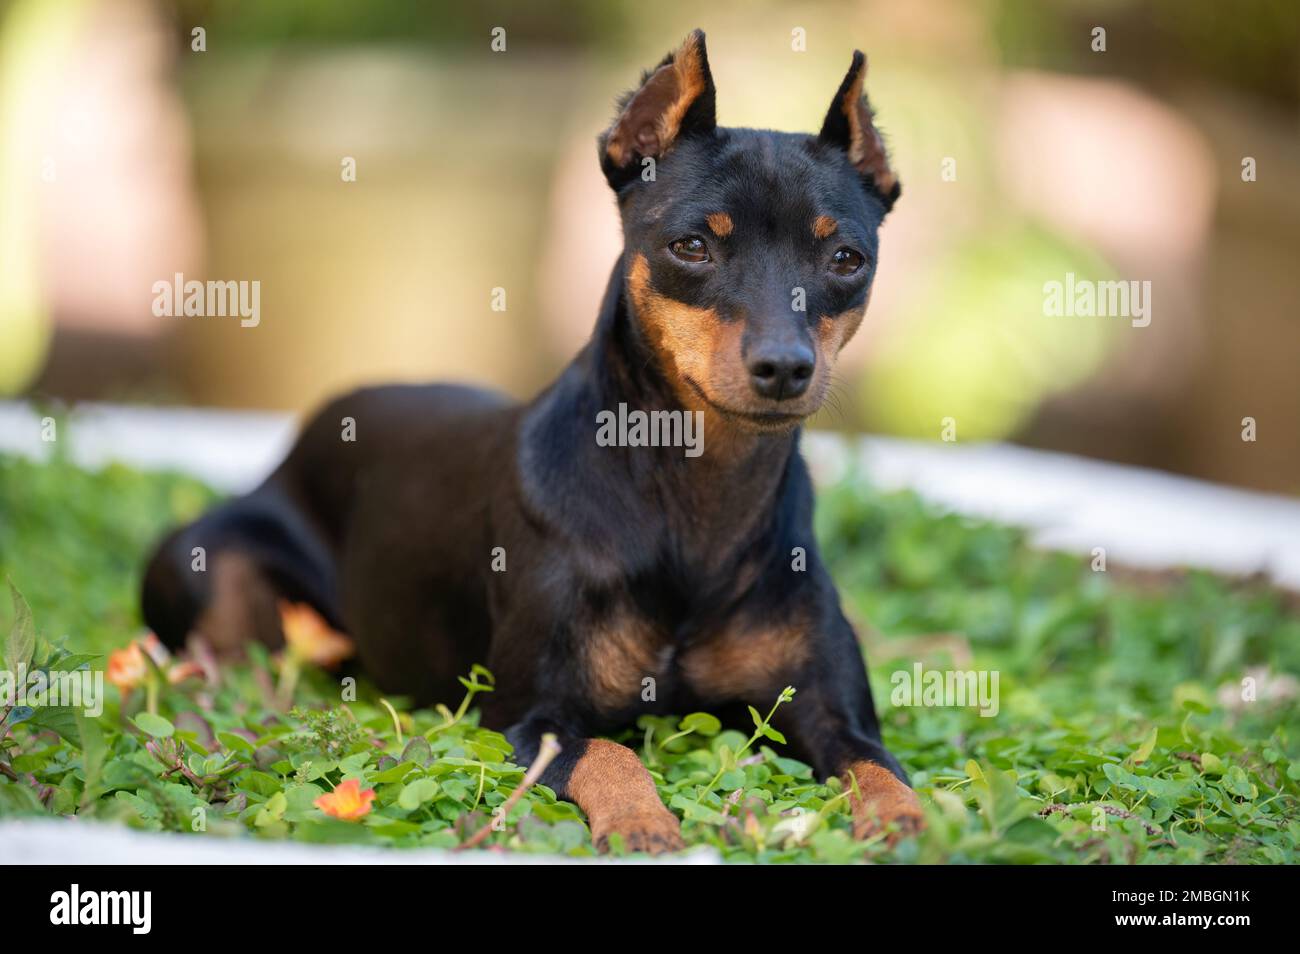 Primo piano ritratto del cane doberman pincher con le orecchie tagliate Foto Stock